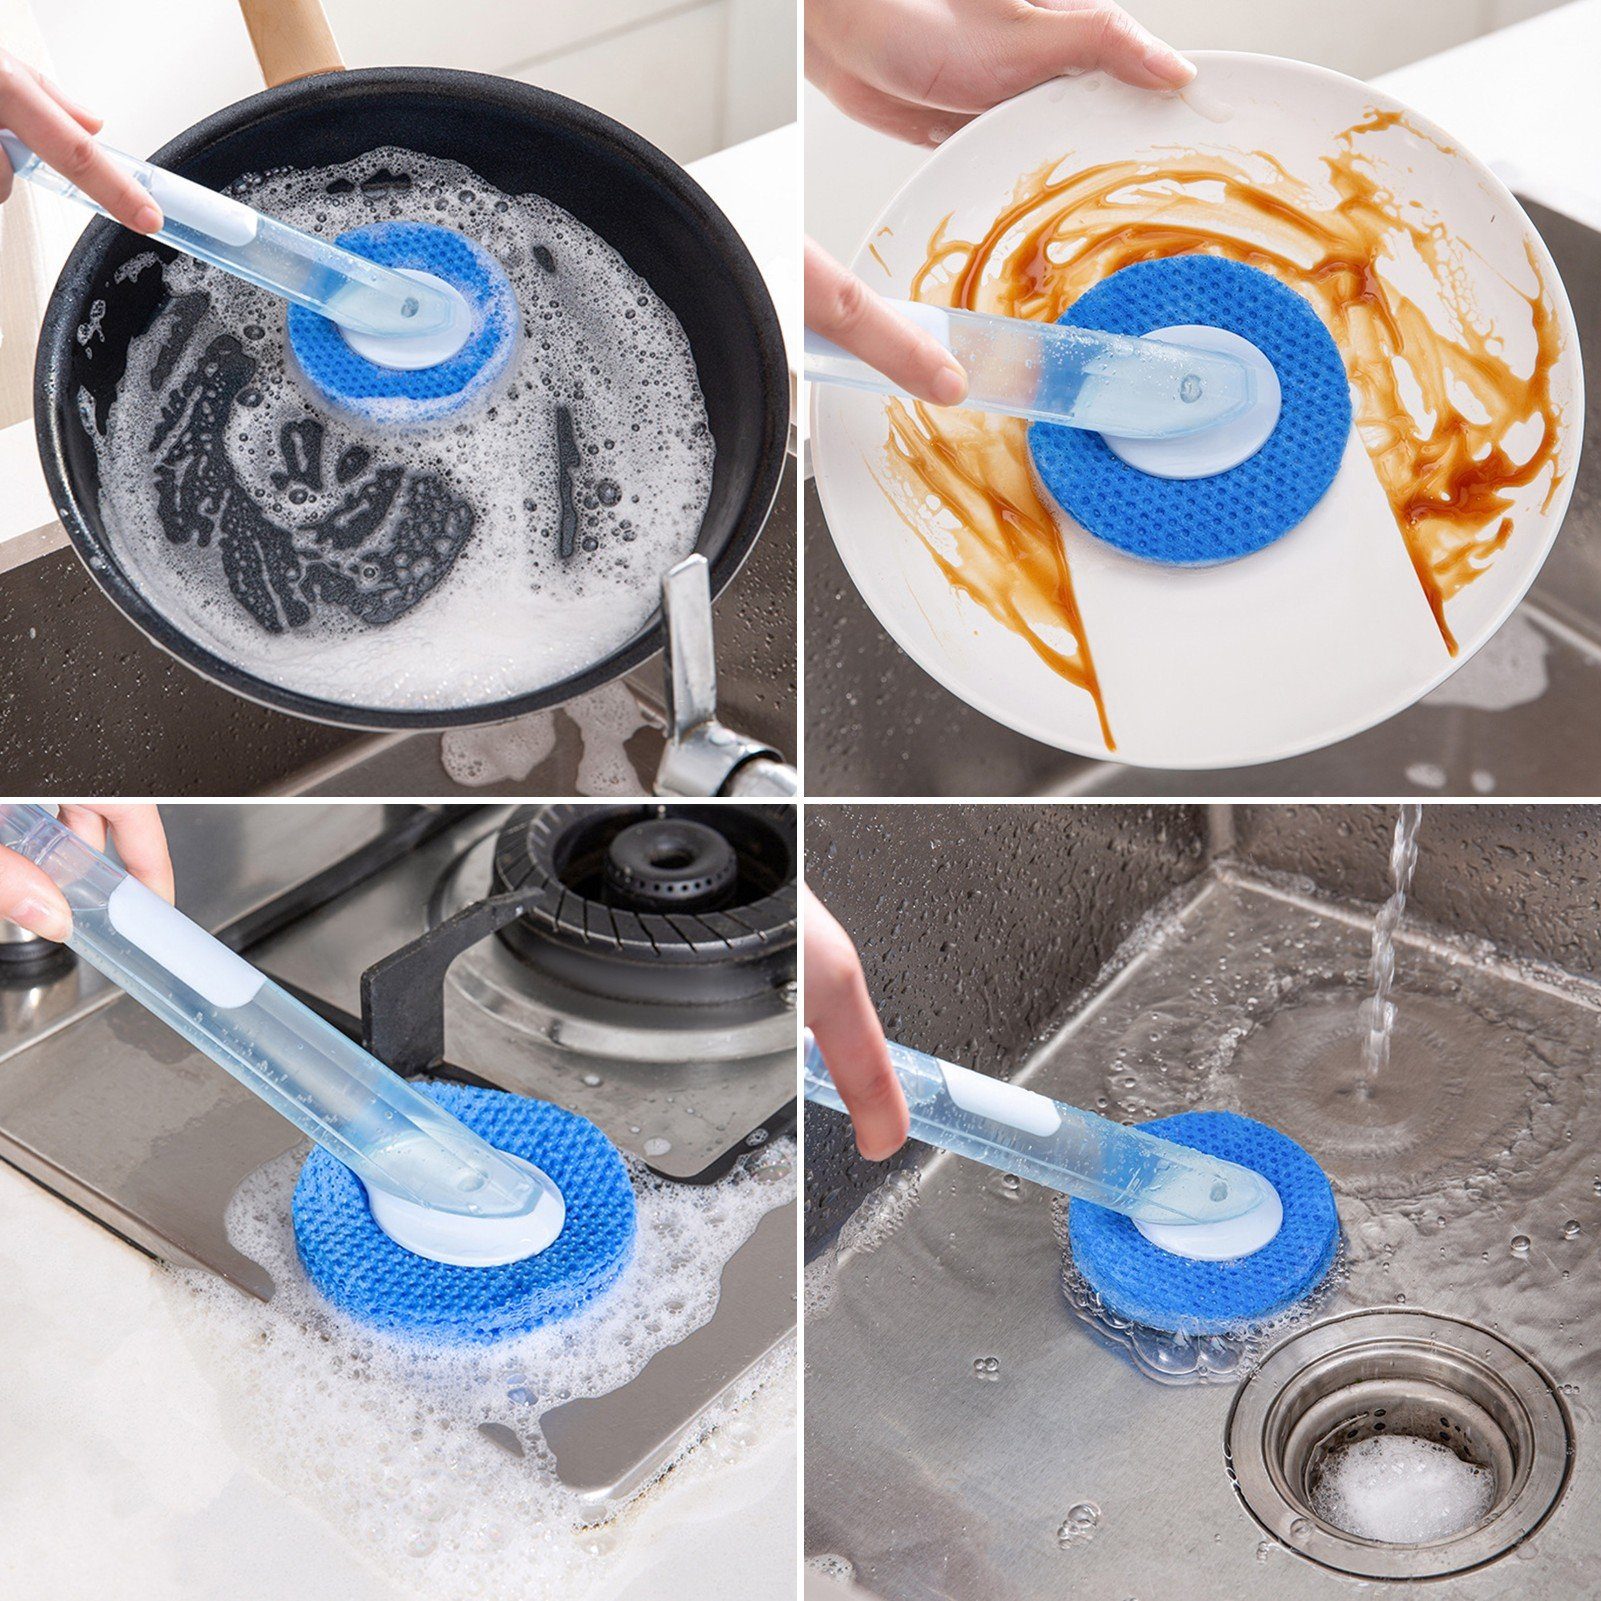 Spülmittelspender Reinigungsbürste mit Reinigungsbürste/Spülbürste Popubear Blau